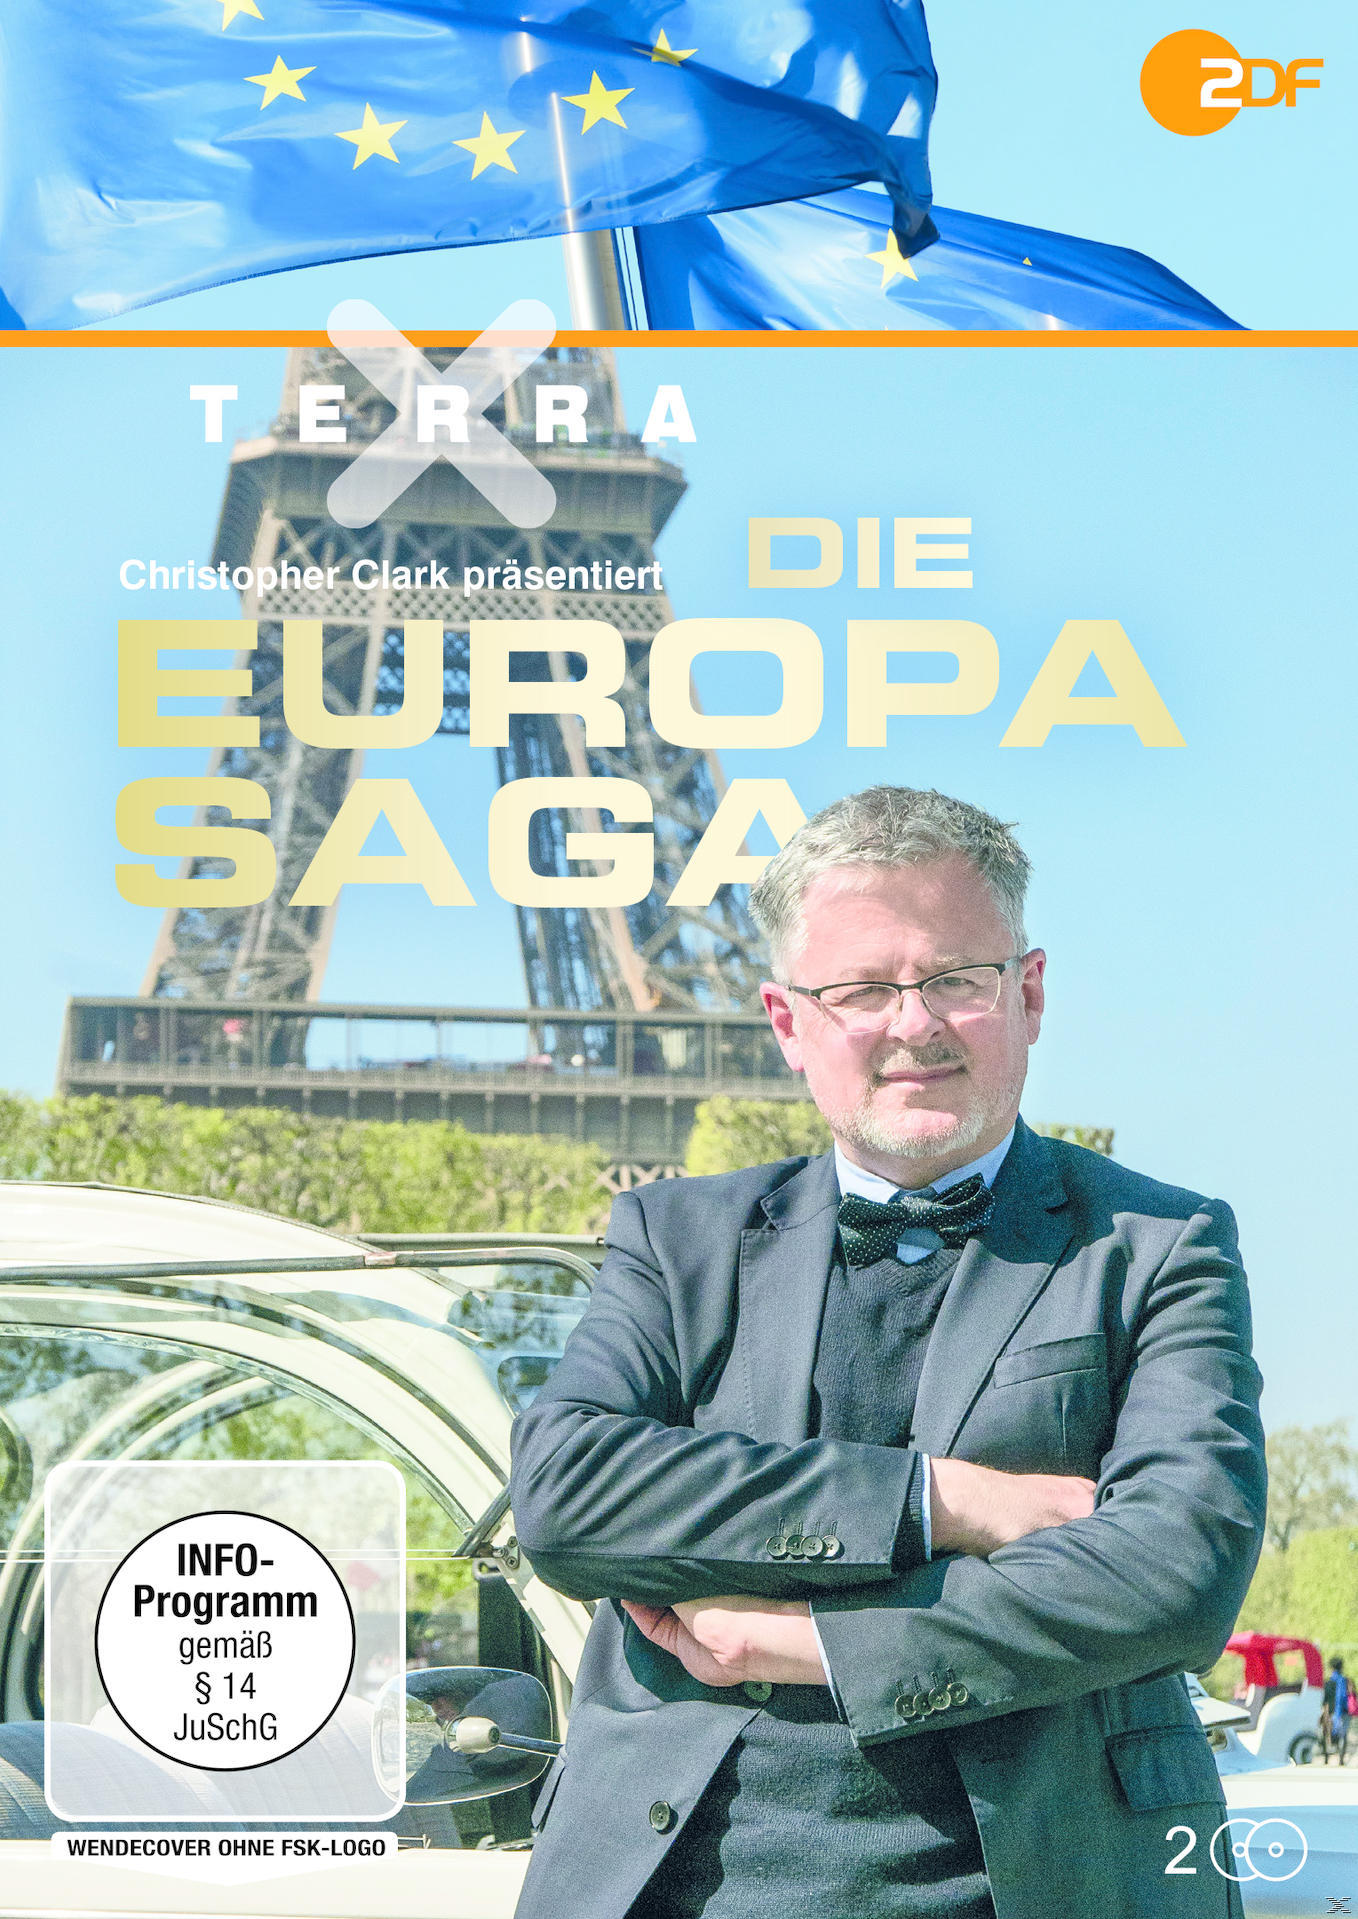 Terra DVD X: Europa-Saga Die